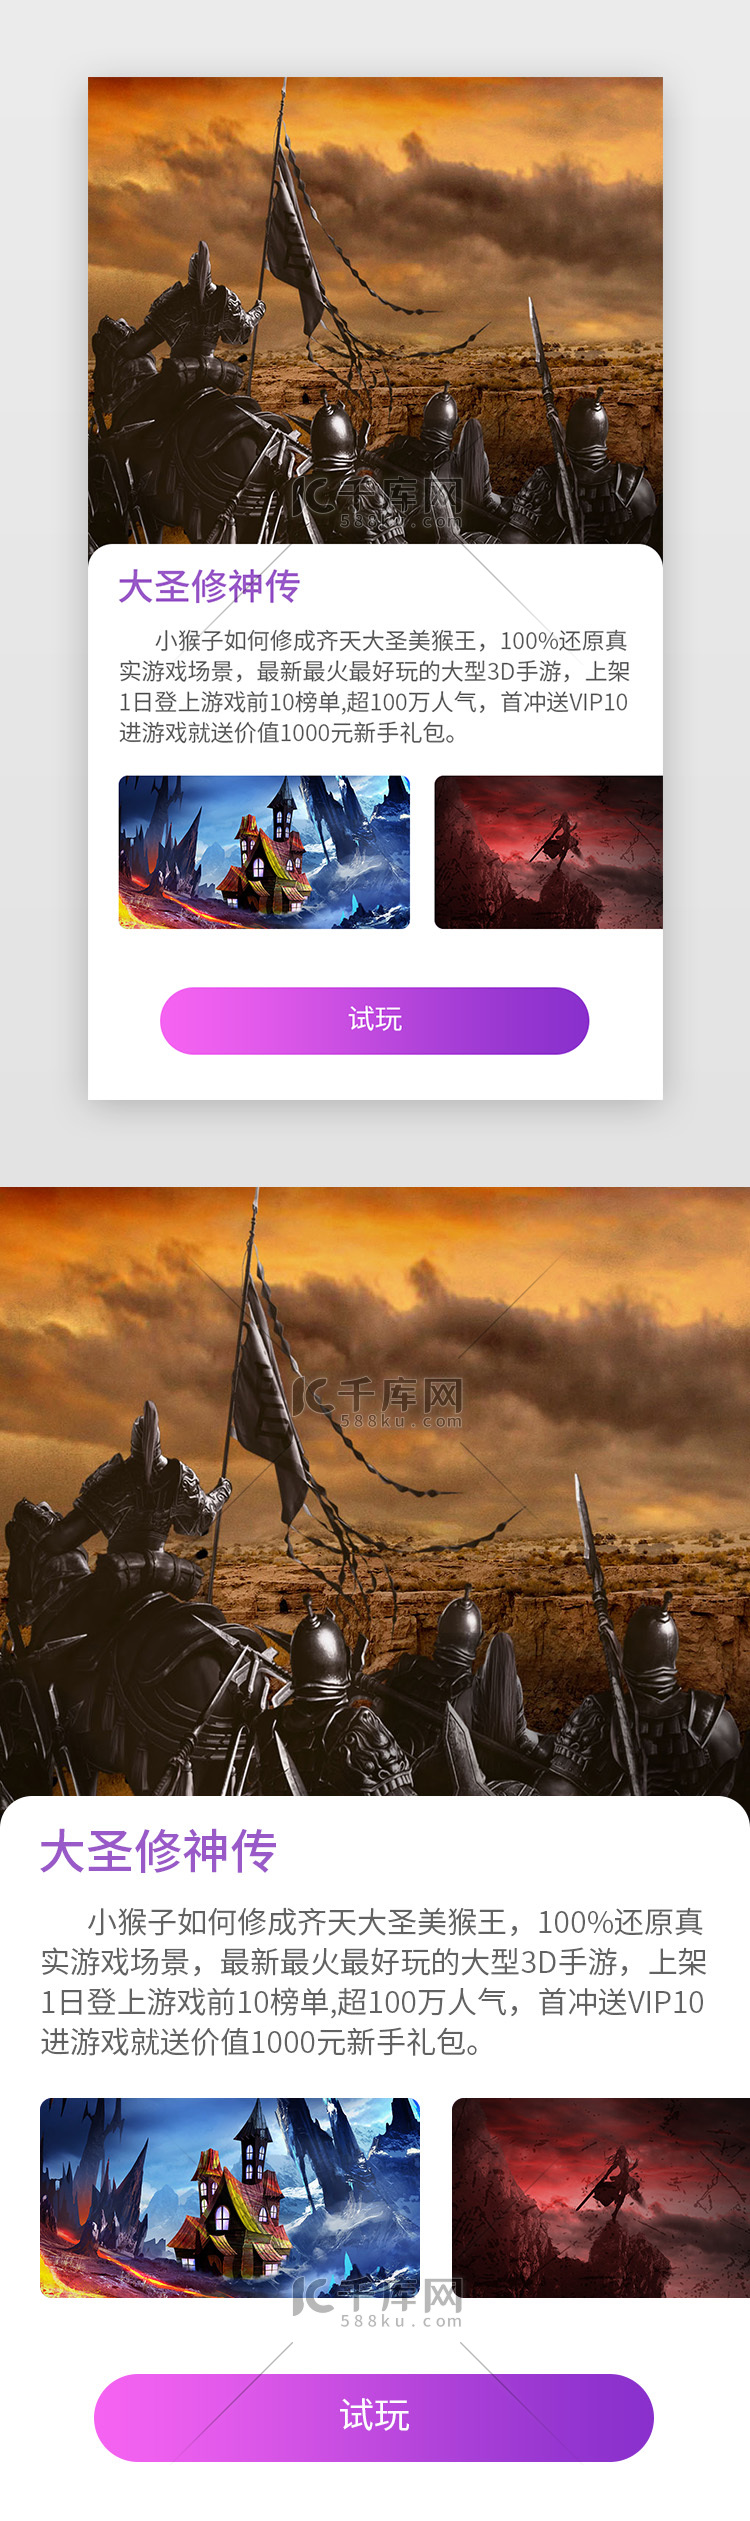 扁平化紫色系游戏详情页面